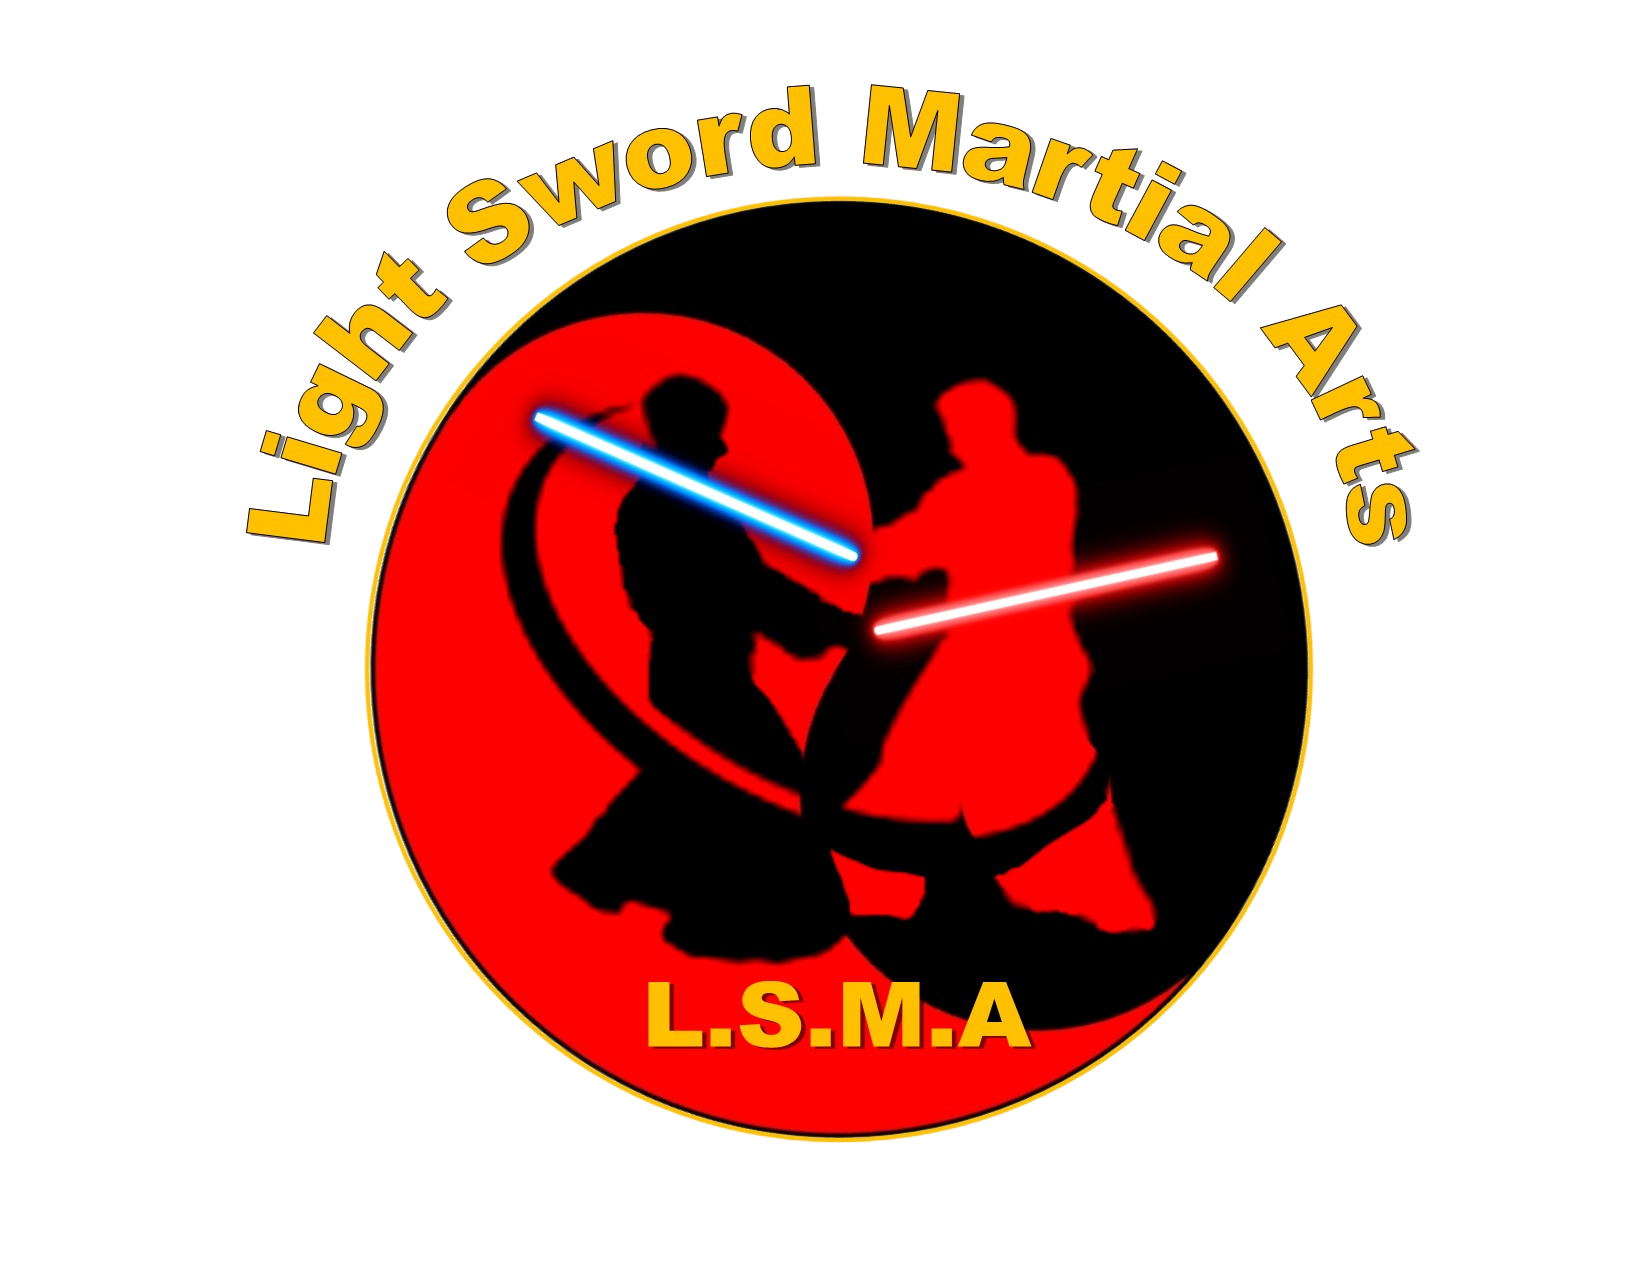 Light Sword Martial Arts